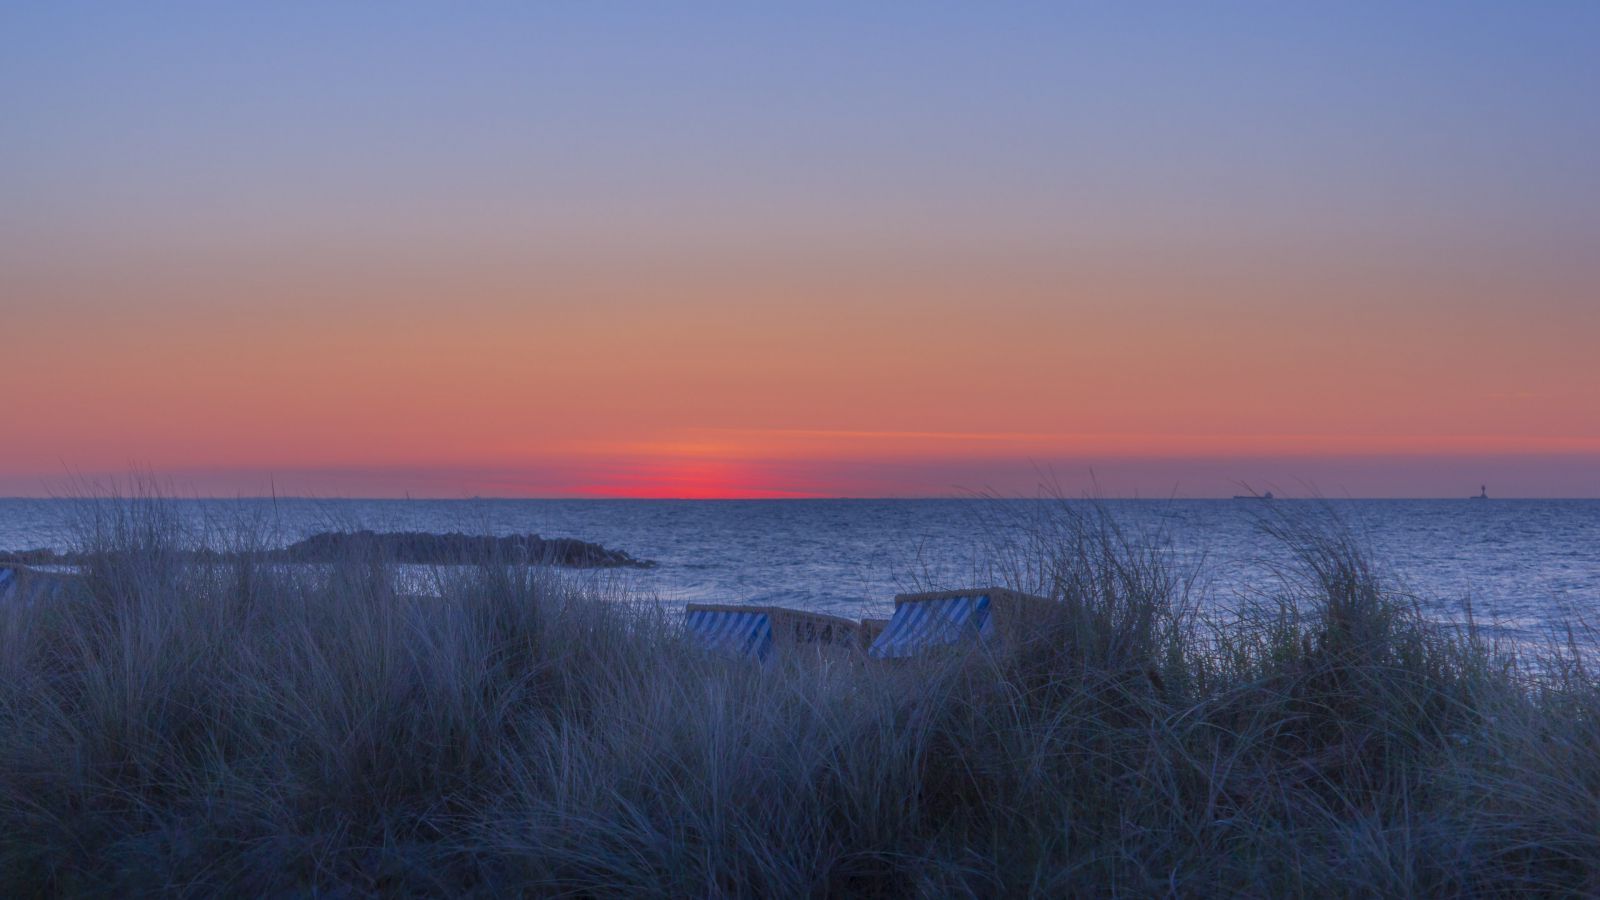  Sonnenuntergang Hintergrundbild 1600x900. Hintergrundbilder. Ostsee nach dem Sonnenuntergang